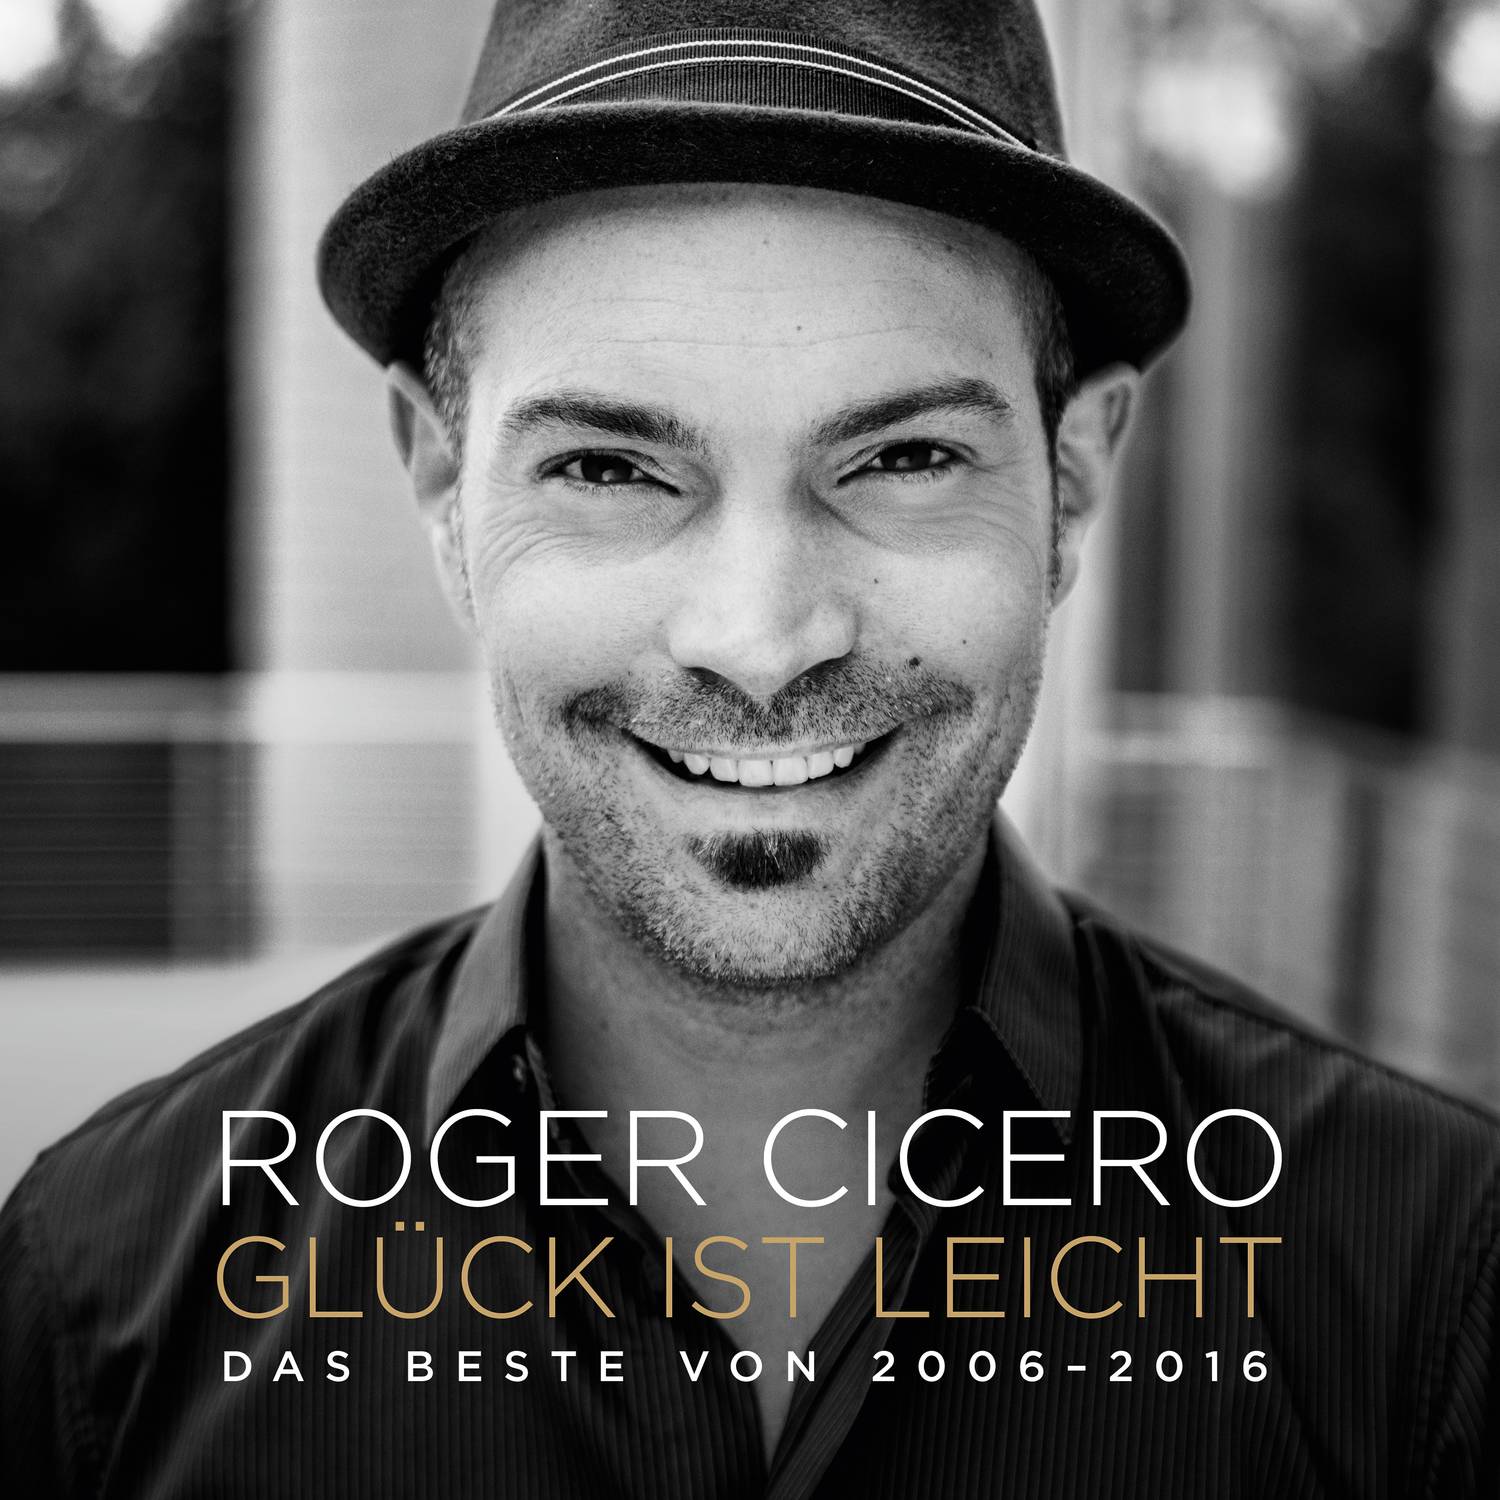 Roger Cicero - Gluck ist leicht: Das Beste von 2006-2016 (2017) [AcousticSounds FLAC 24bit/44,1kHz]